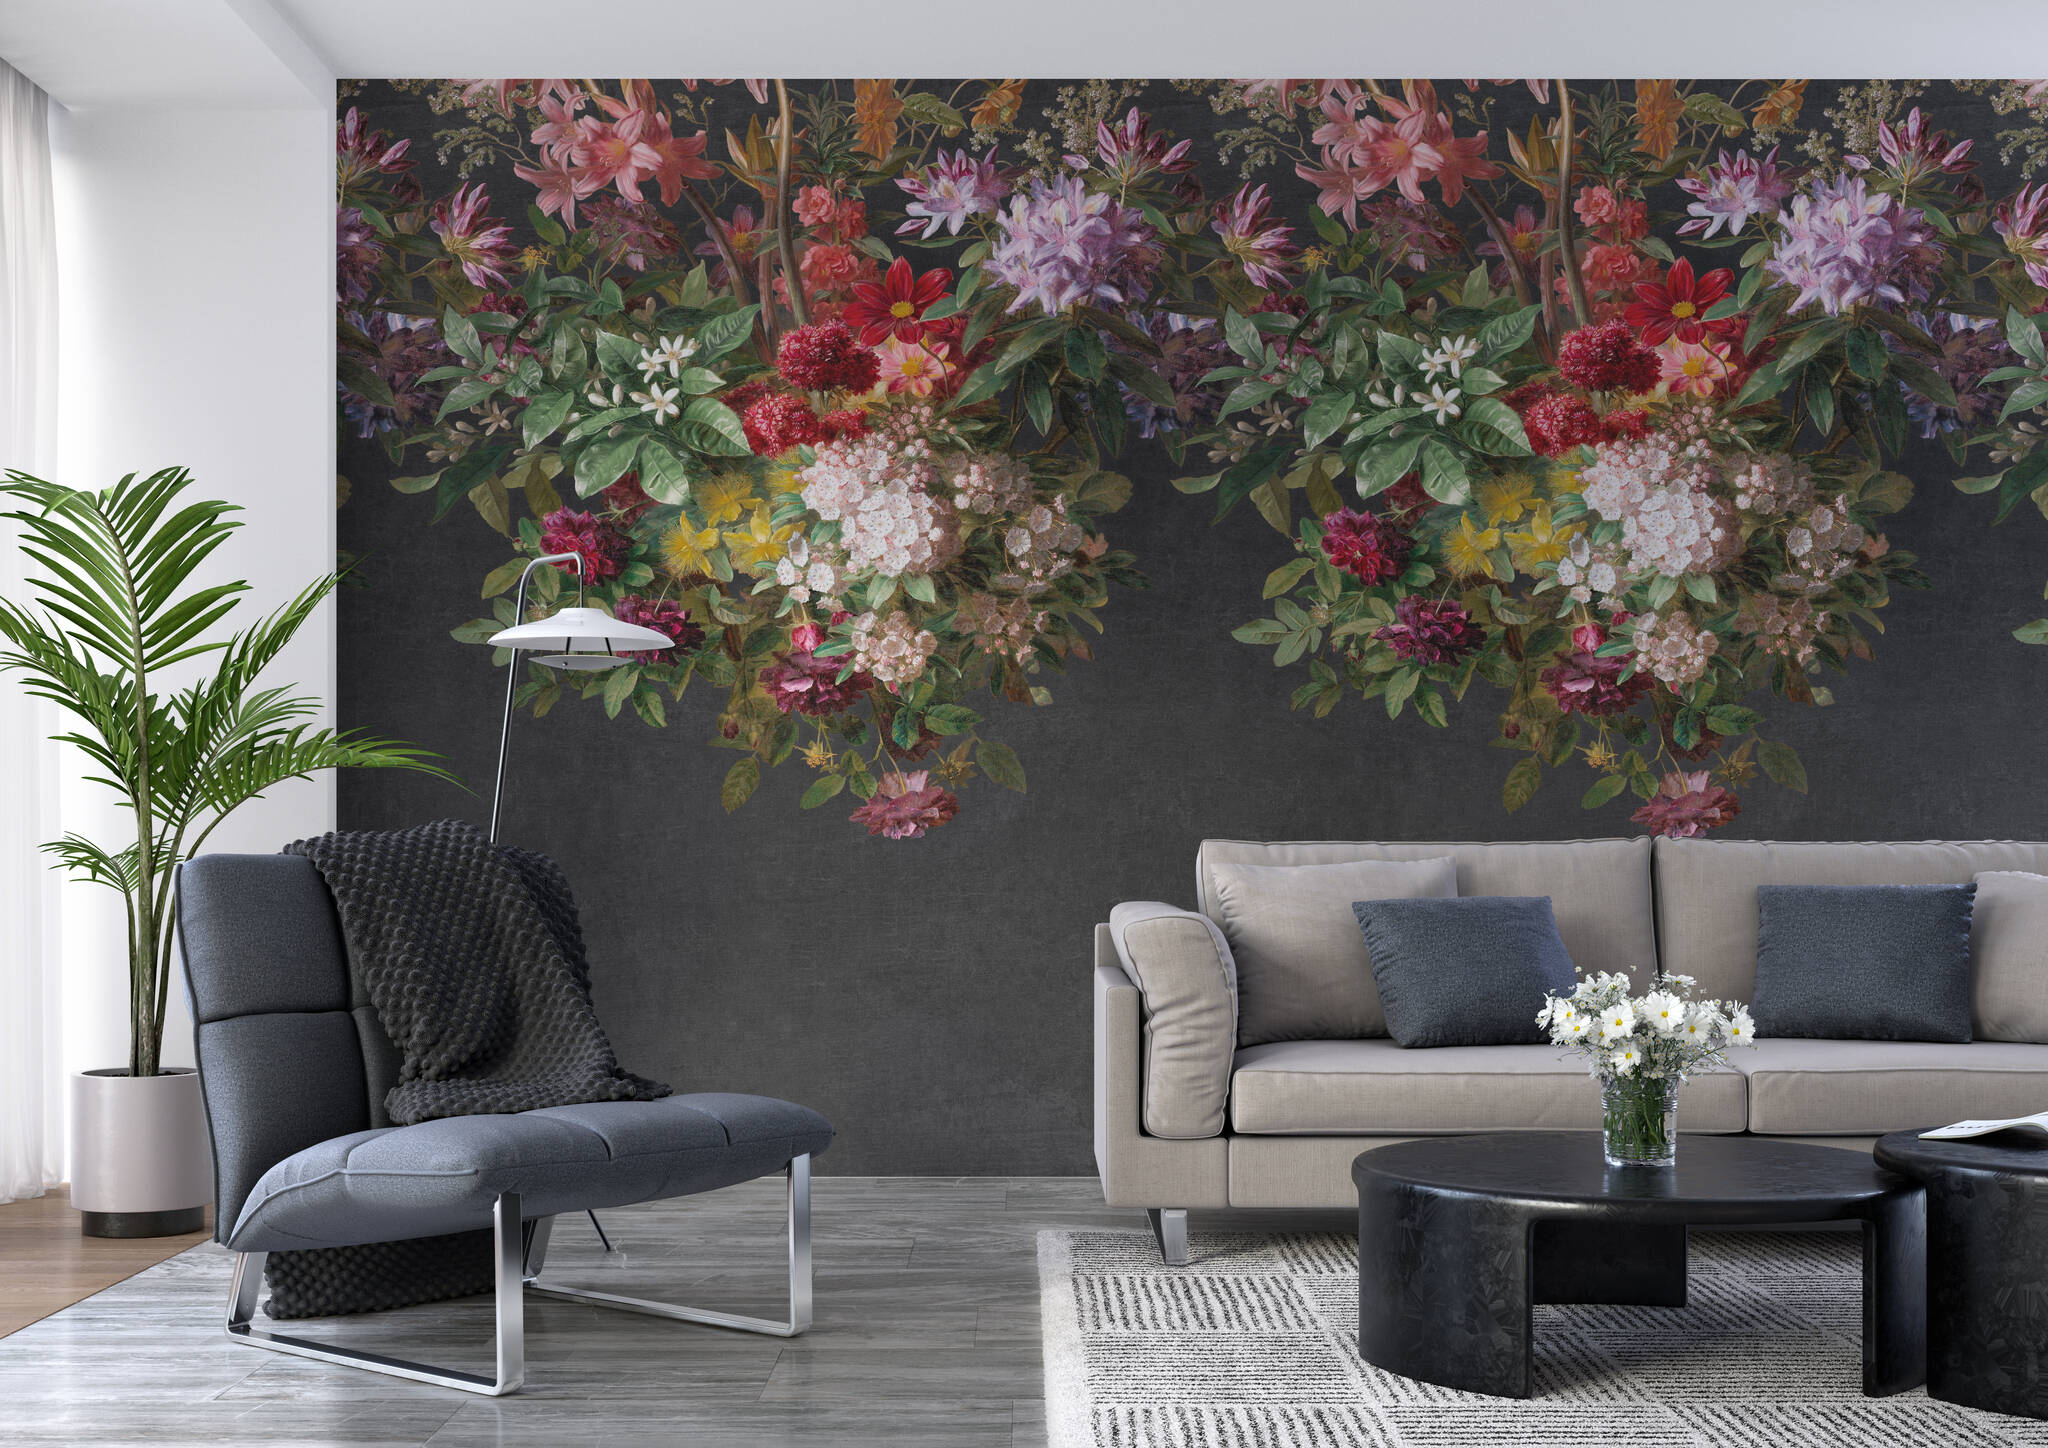 Wohnzimmer mit Wandbild - Blütenpracht in kräftigen Farben auf schwarzem Hintergrund